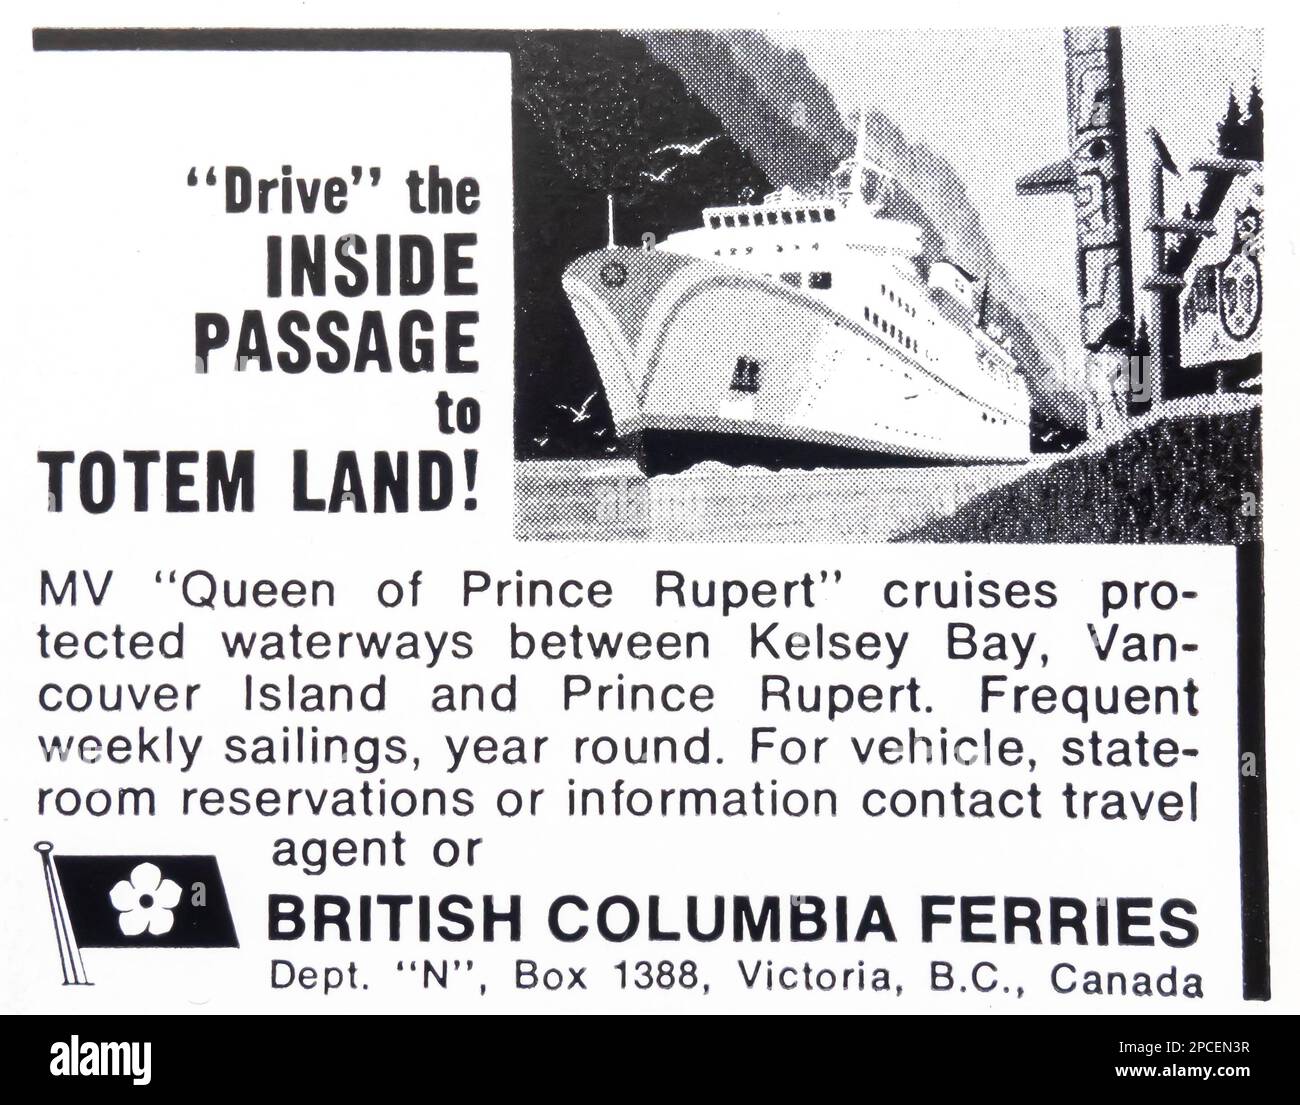 Publicité des ferries de la Colombie-Britannique dans un magazine NatGeo juin 1969 Banque D'Images